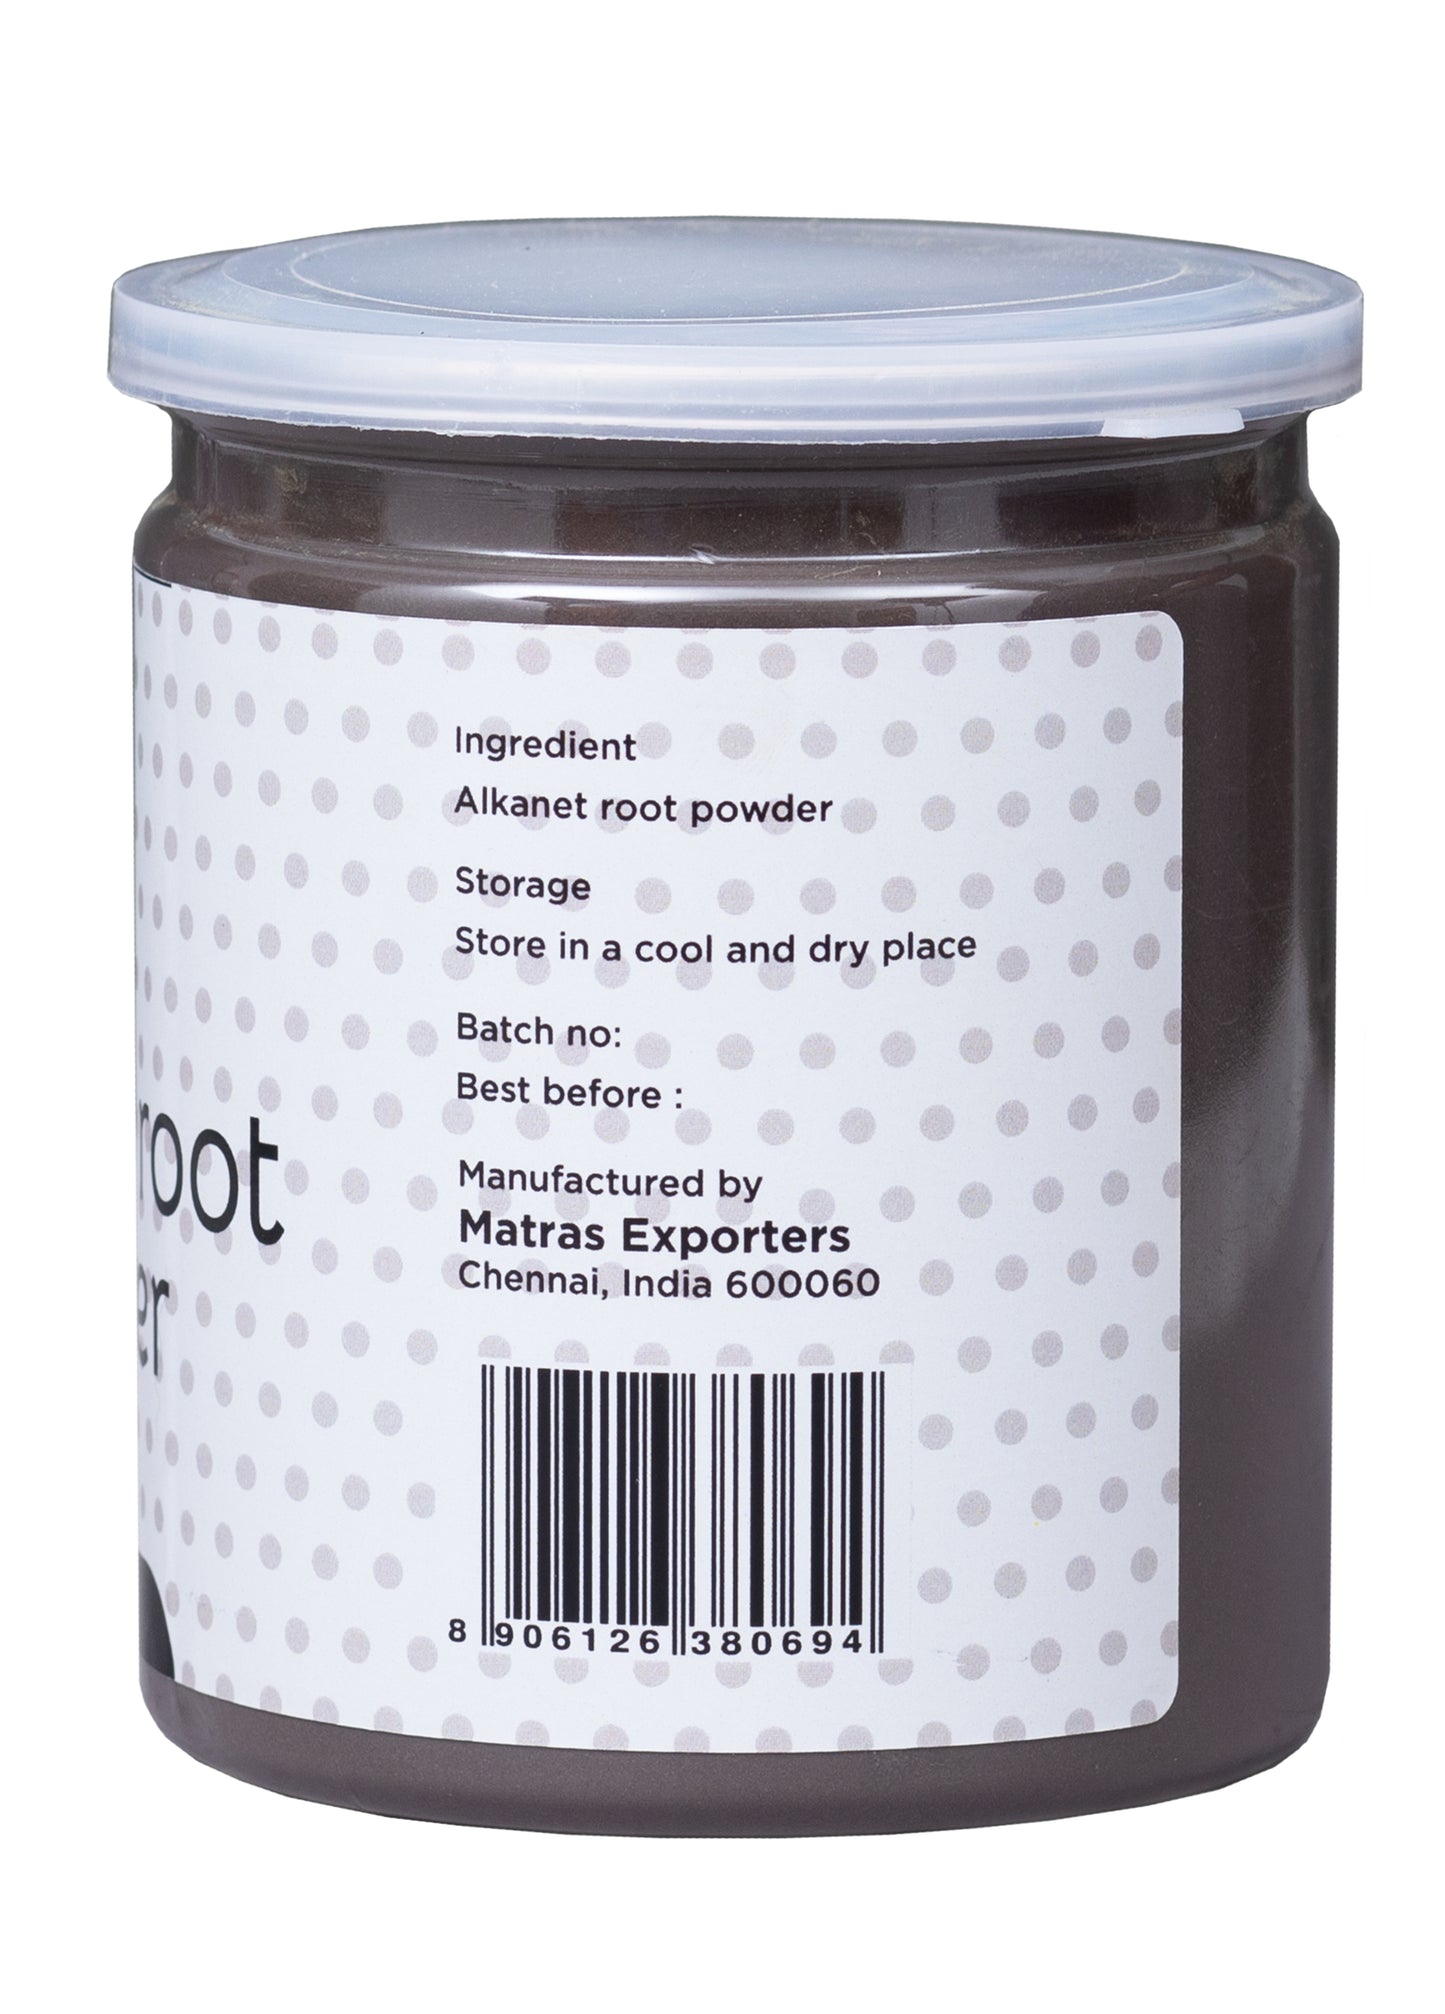 Alkanet Root Powder 10oz | 100% Natural Colourant for Soap Making | Makes Beautiful Color Shades | Ratanjot Root Powder | Yogis's Gift